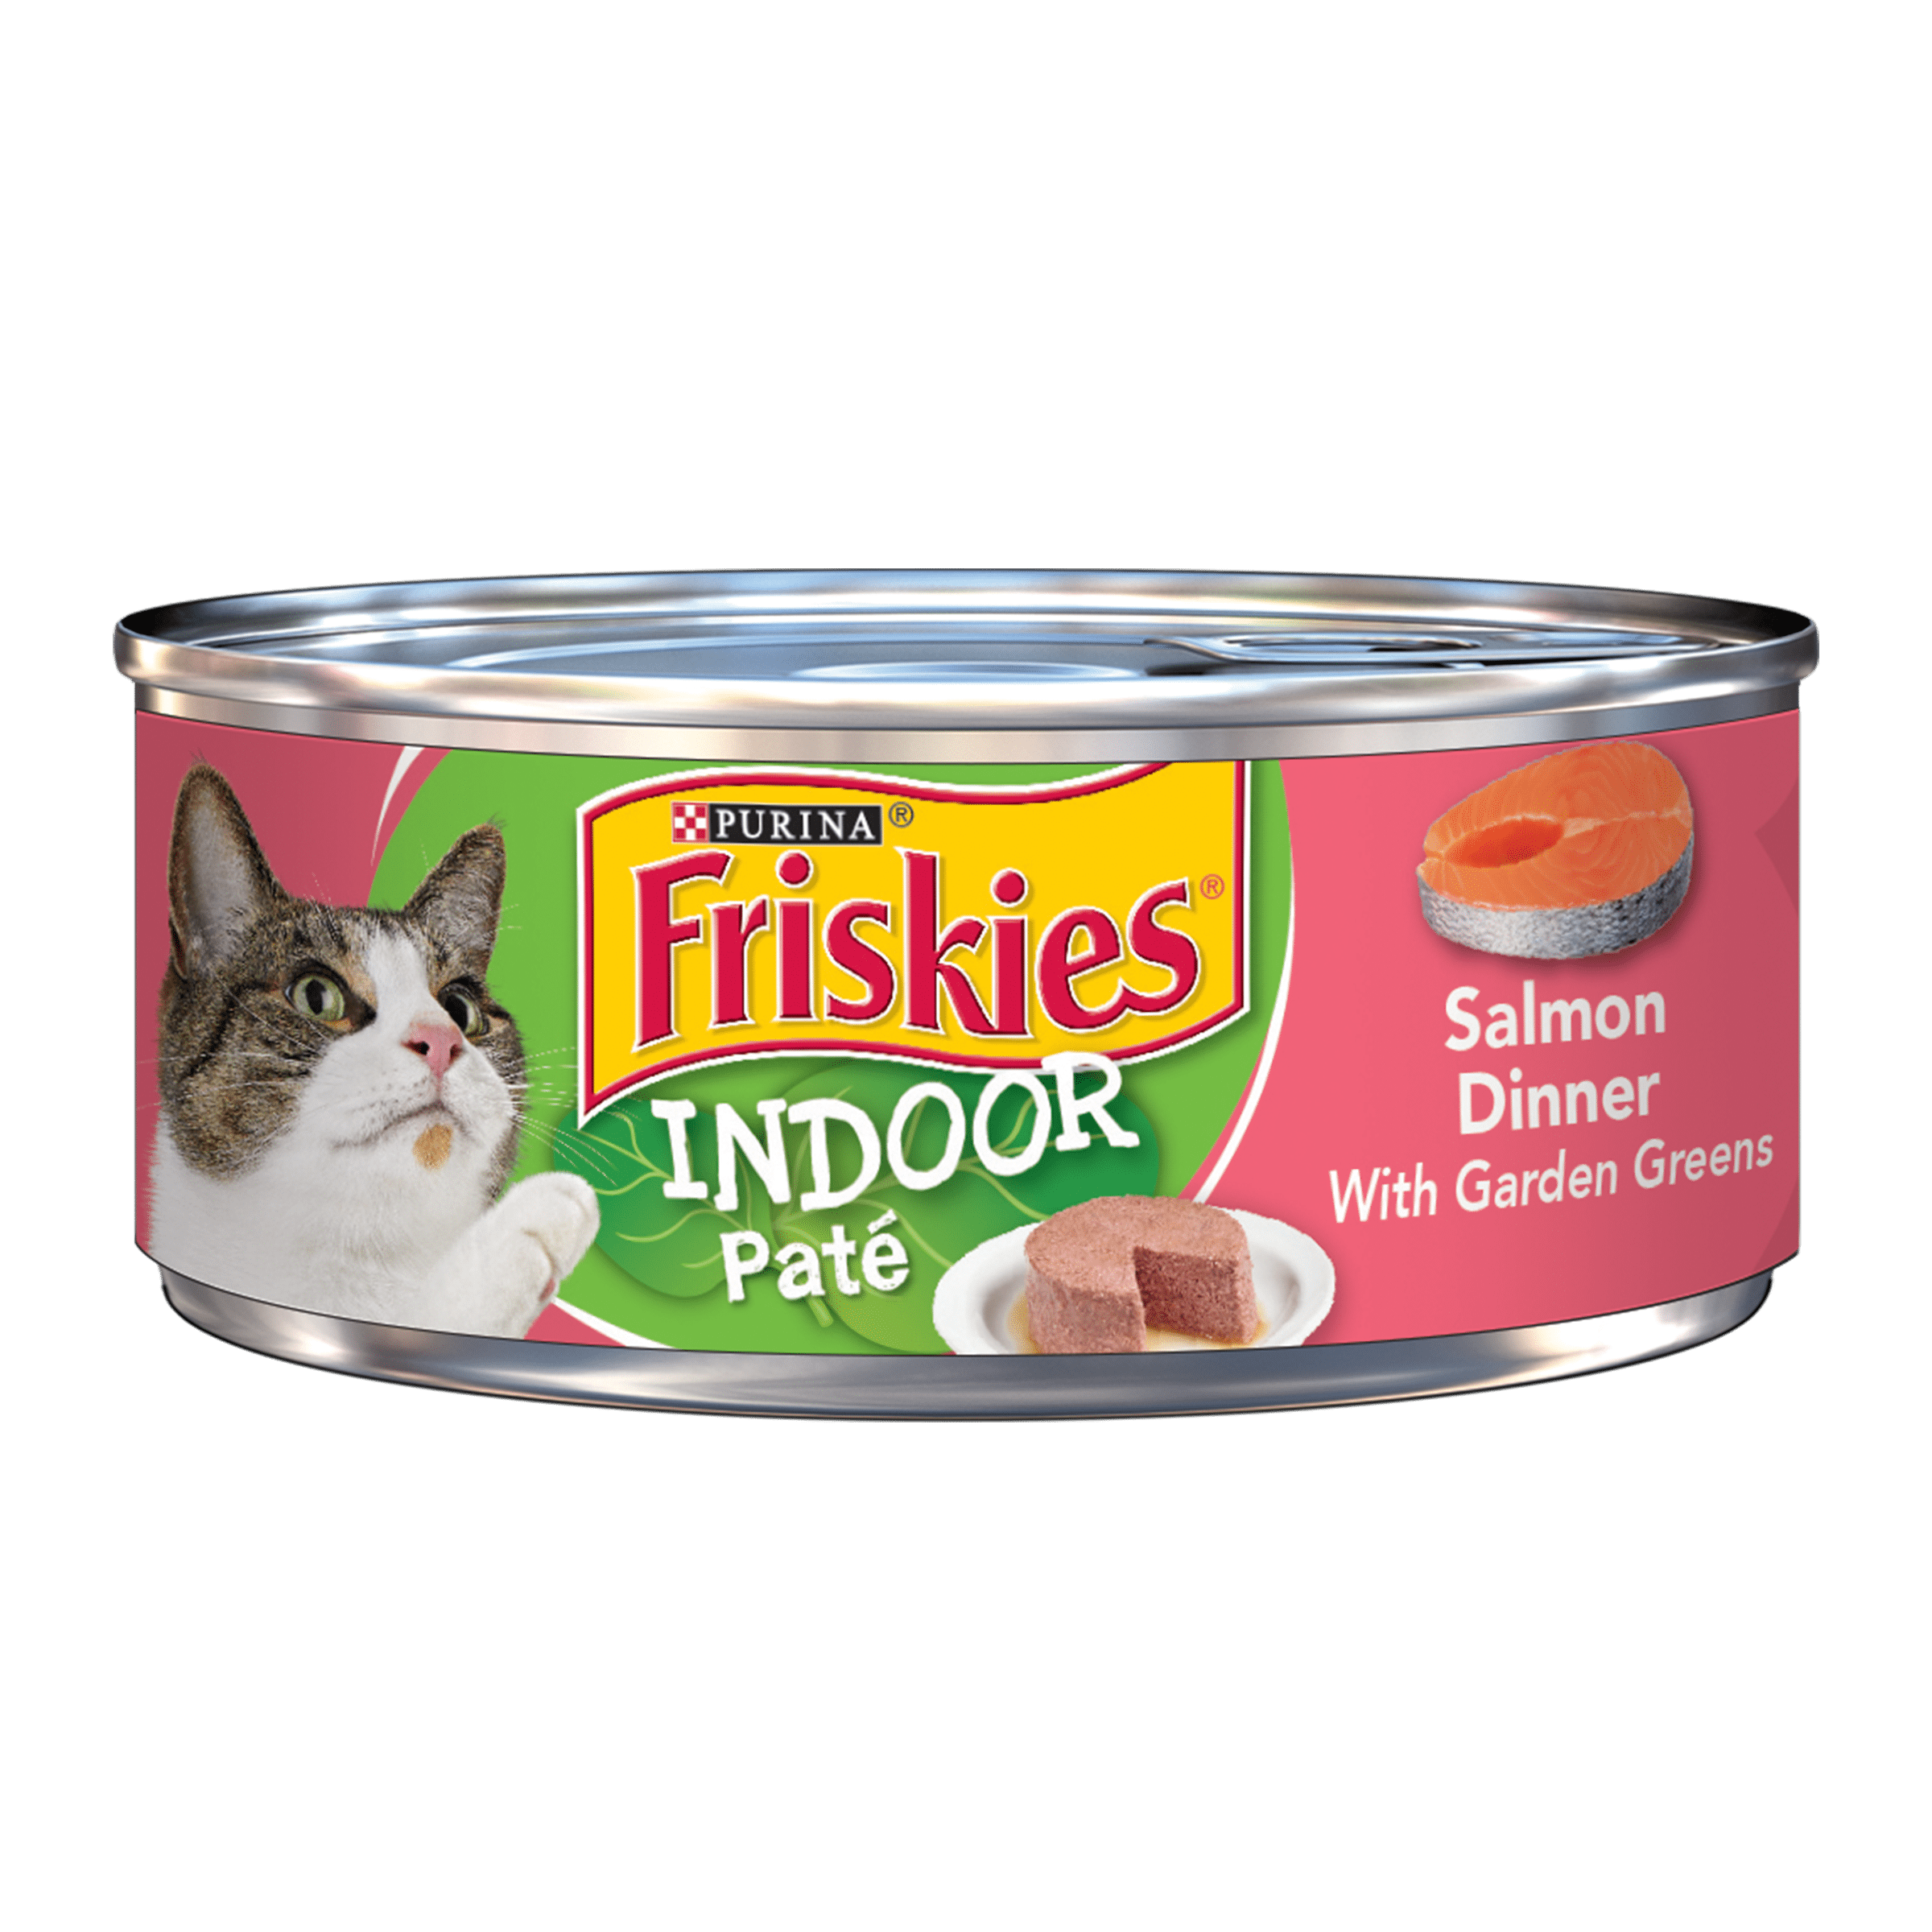 Friskies Indoor Pate Wet Cat Food, Indoor Salmon Dinner With Garden